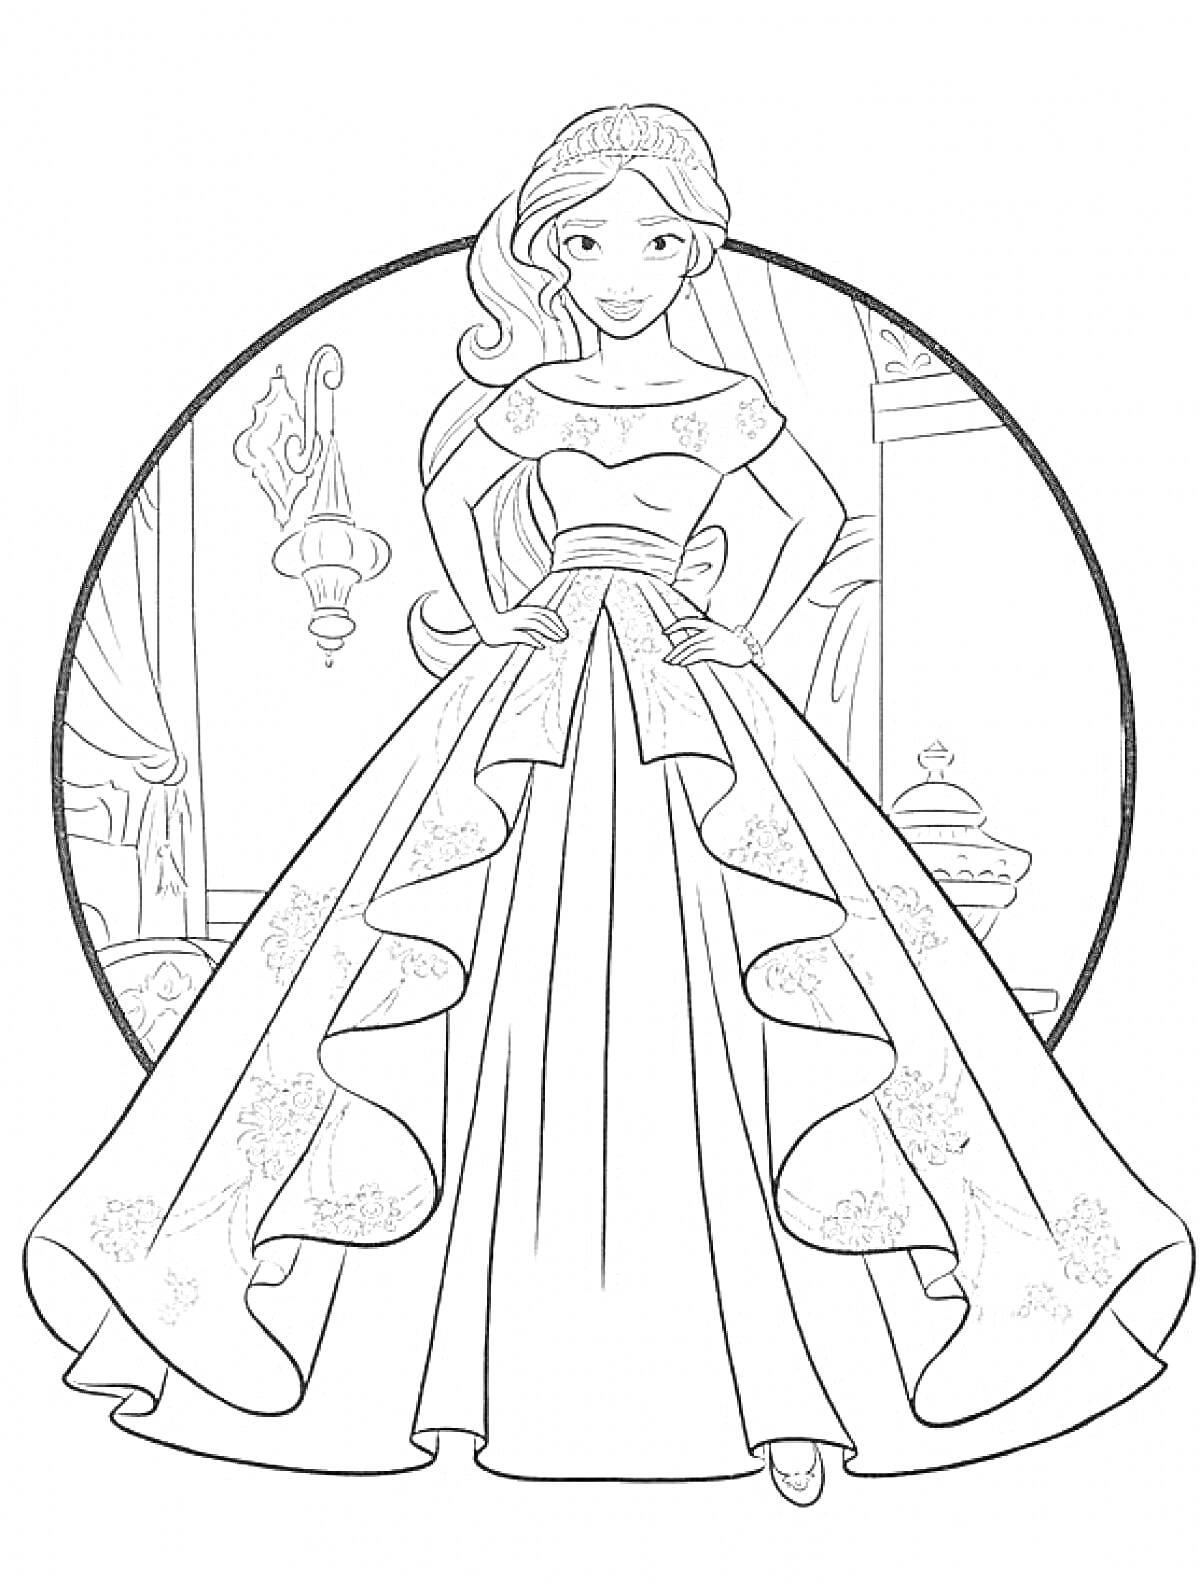 Раскраска Принцесса в бальном платье с цветочным орнаментом на юбке, на фоне дворца с лампой и окном